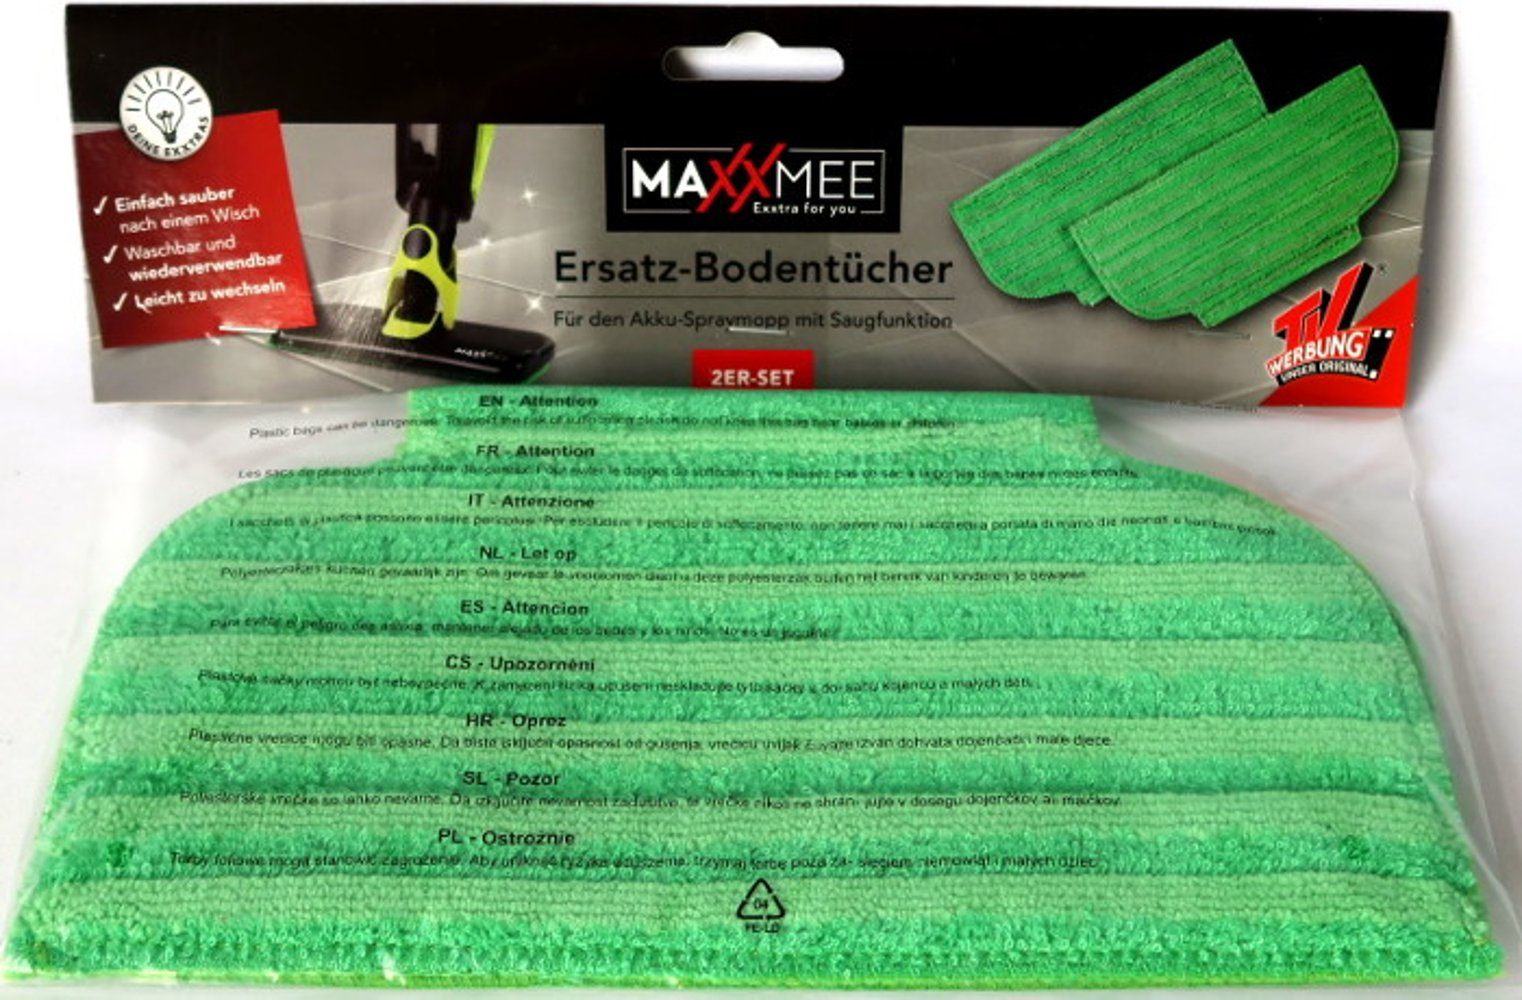 Ersatz-Bodentücher Set MAXXMEE in für Saugfunktion, mit Akku-Spraymopp Wischmopp Wischtuch grün Bodentuch 2er